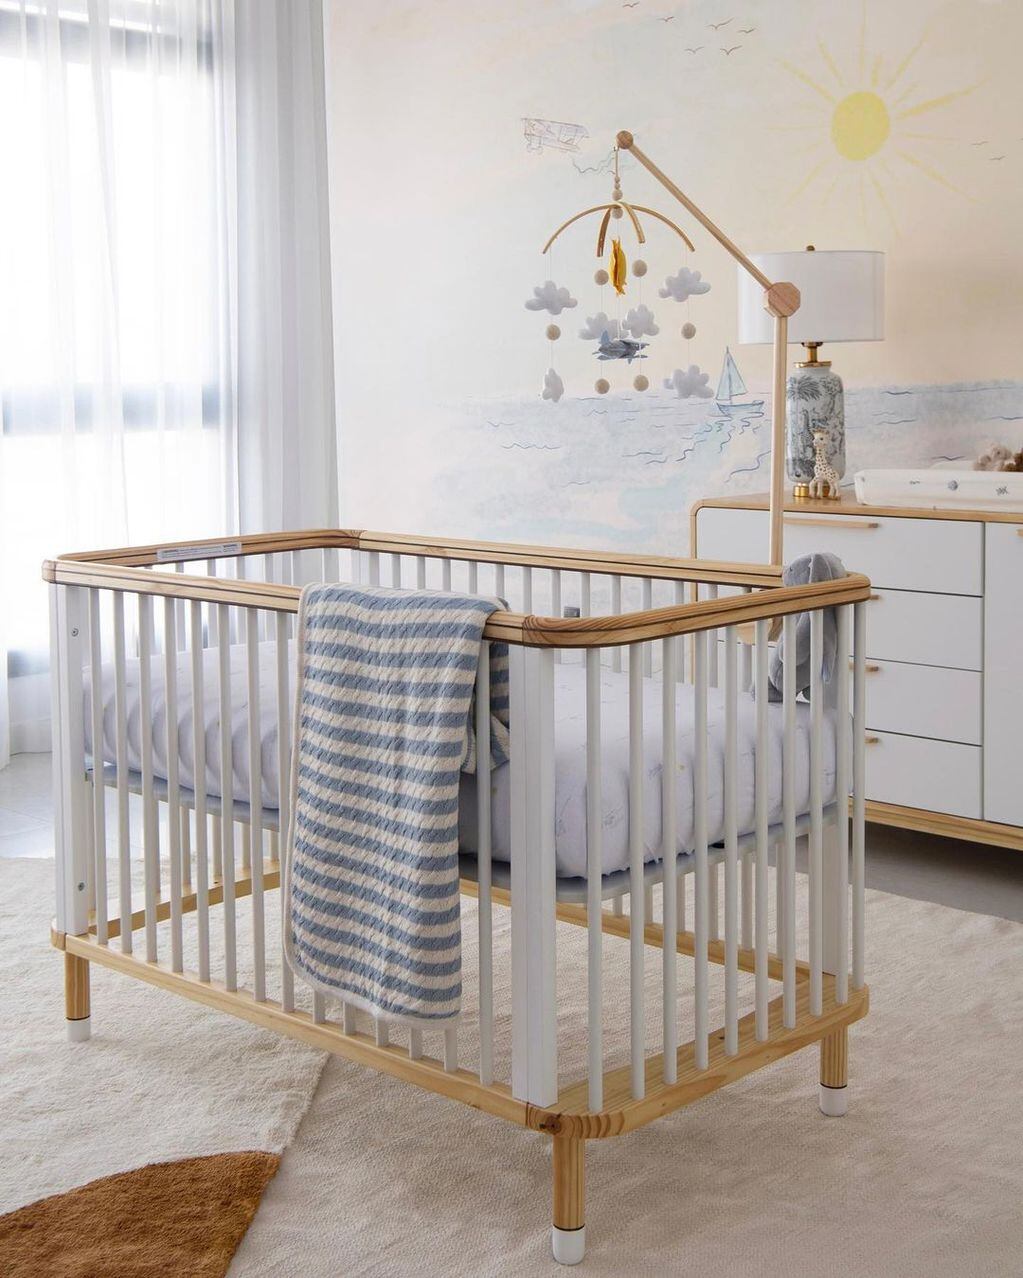 La habitación del bebé de Lindsay Lohan